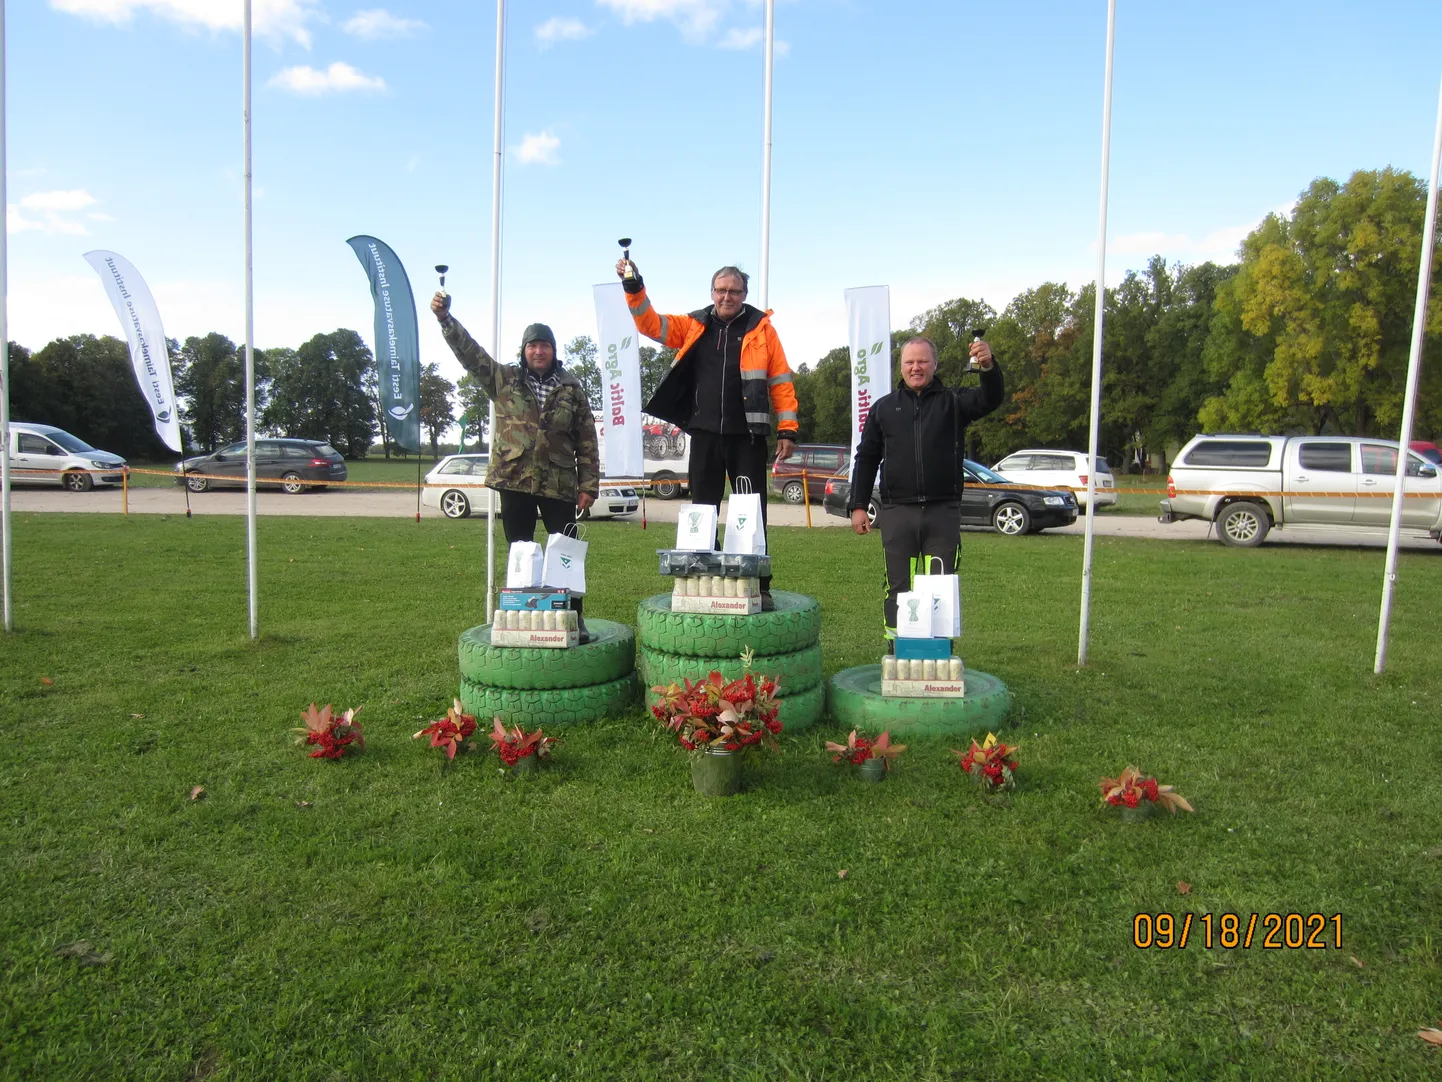 Esimese põkade künnivõistluse võitjad 2021. aastal Olustvere Eesti künnimeistrivõistlustel: Heiki Hiiemäe (vasakult), Toivo Sepp ja Kalle klandor.